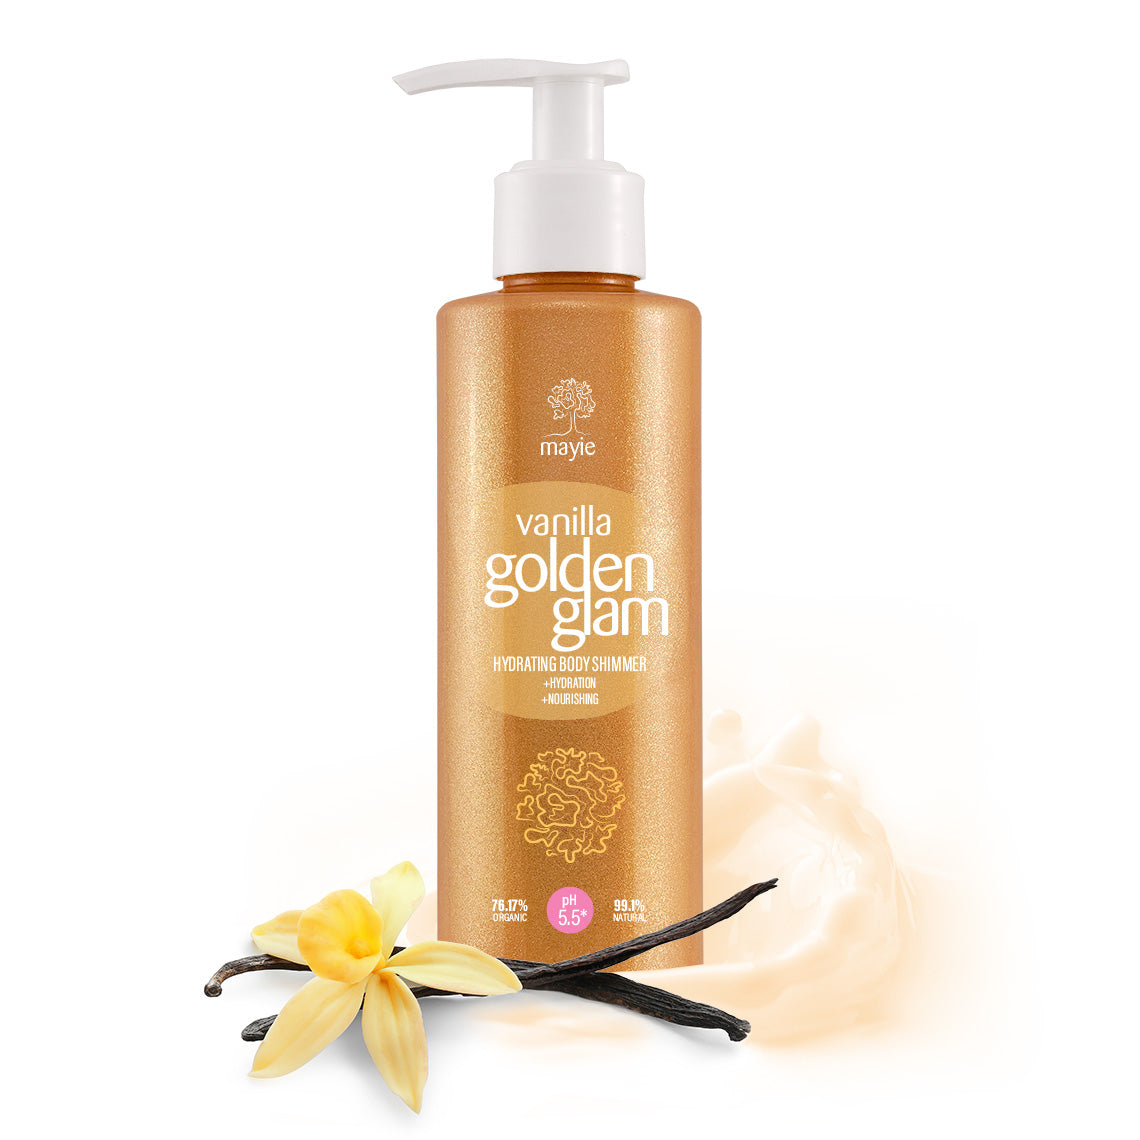 Mayie Vanilla Golden Glam - Hydrating Body Shimmer